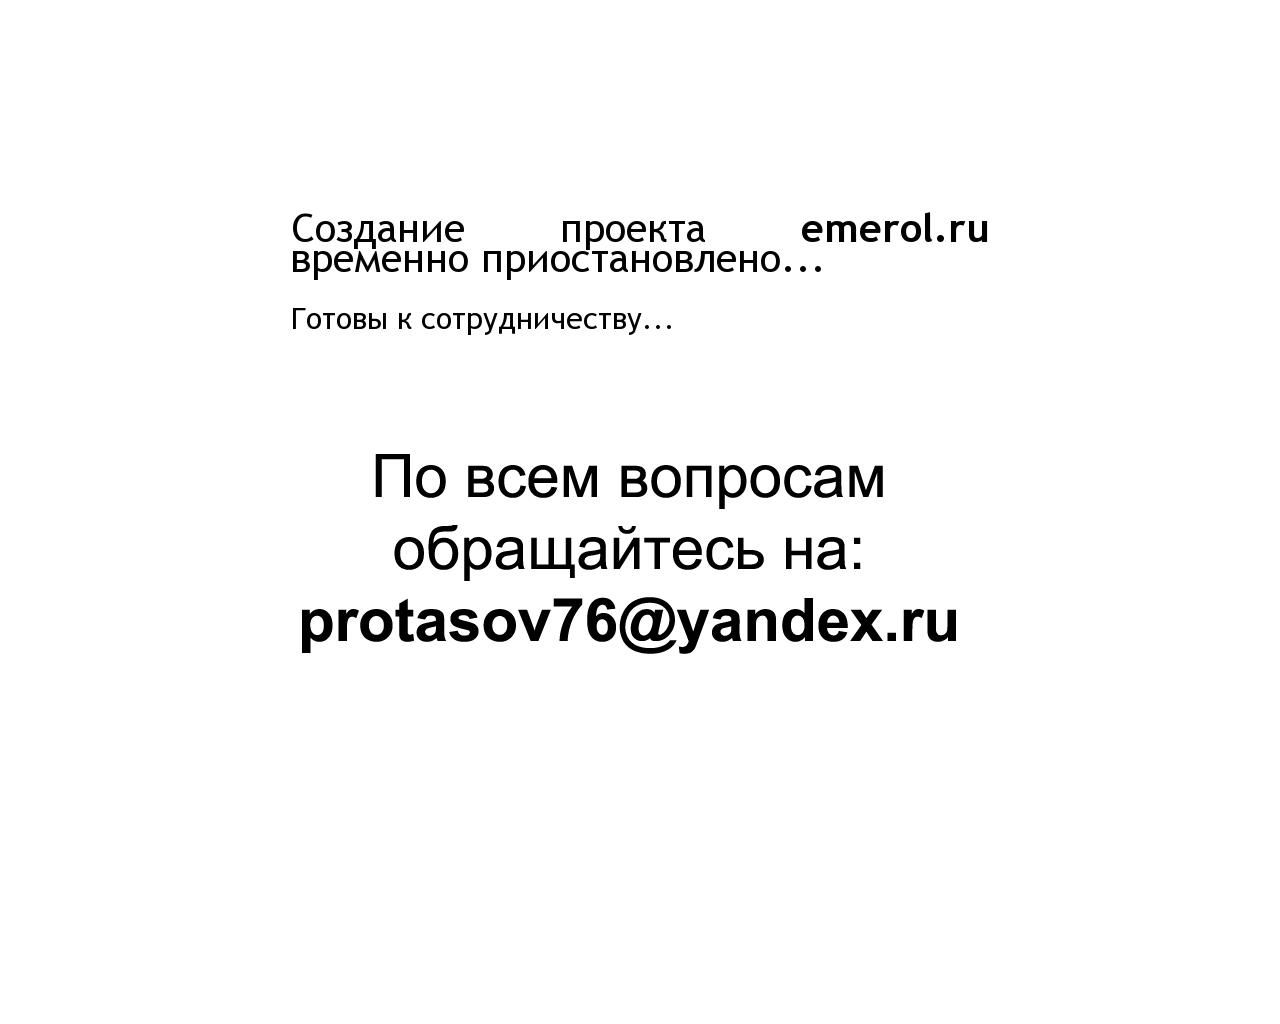 Изображение сайта emerol.ru в разрешении 1280x1024